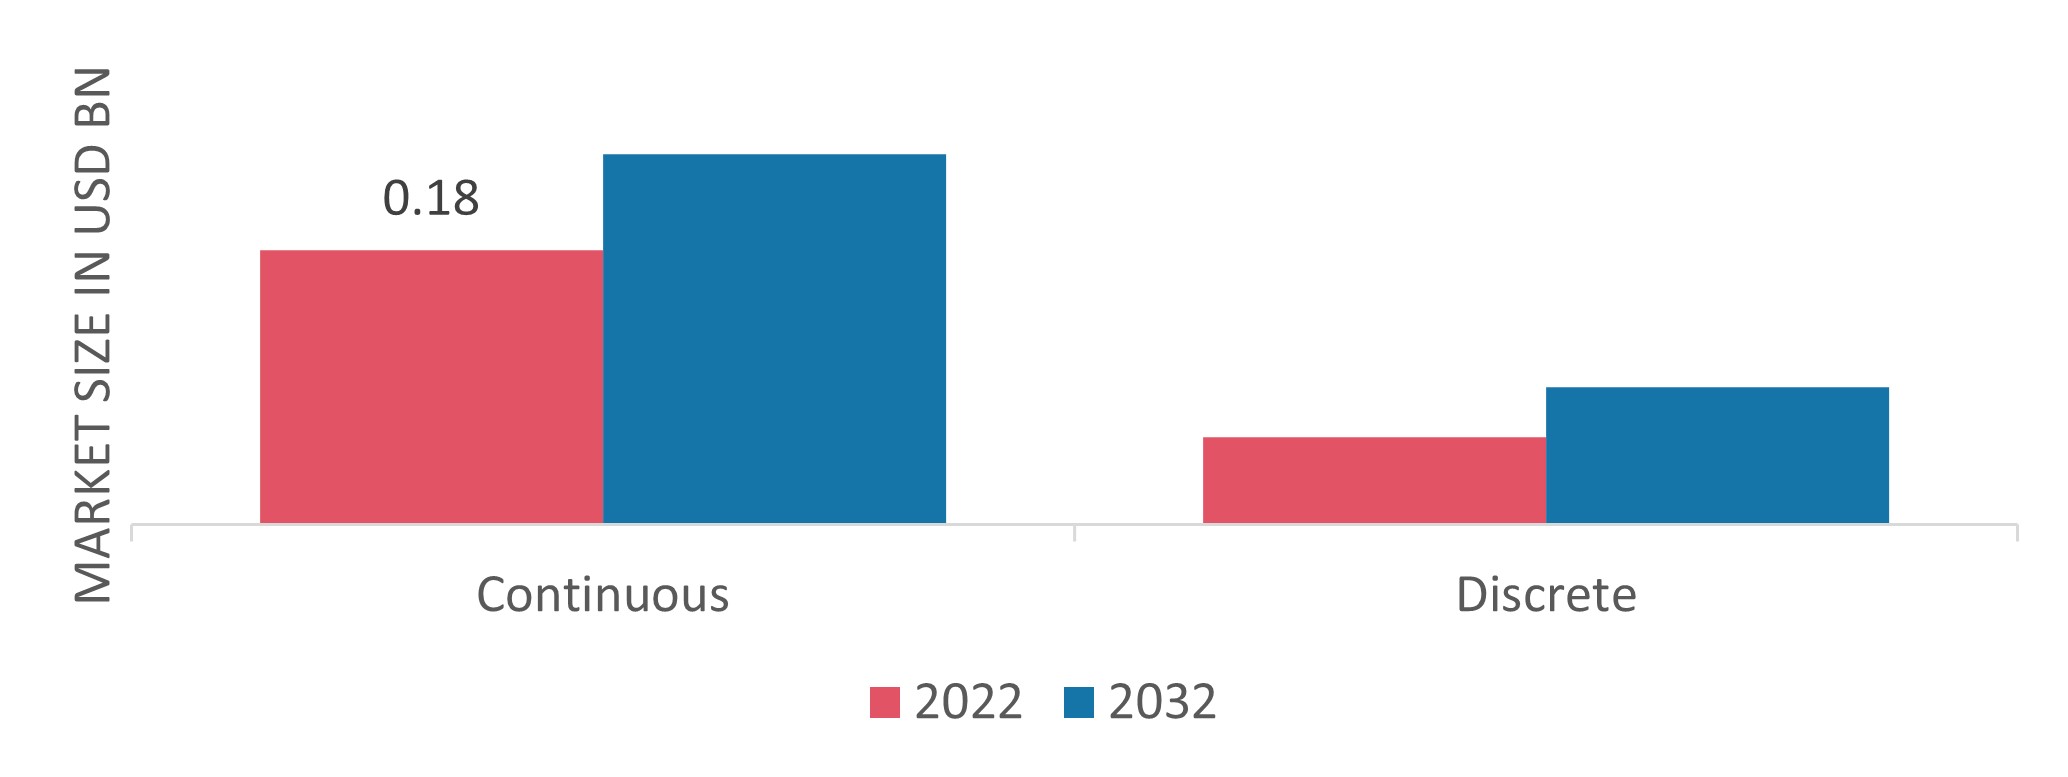 Basalt Fiber Market by Form, 2022 & 2032